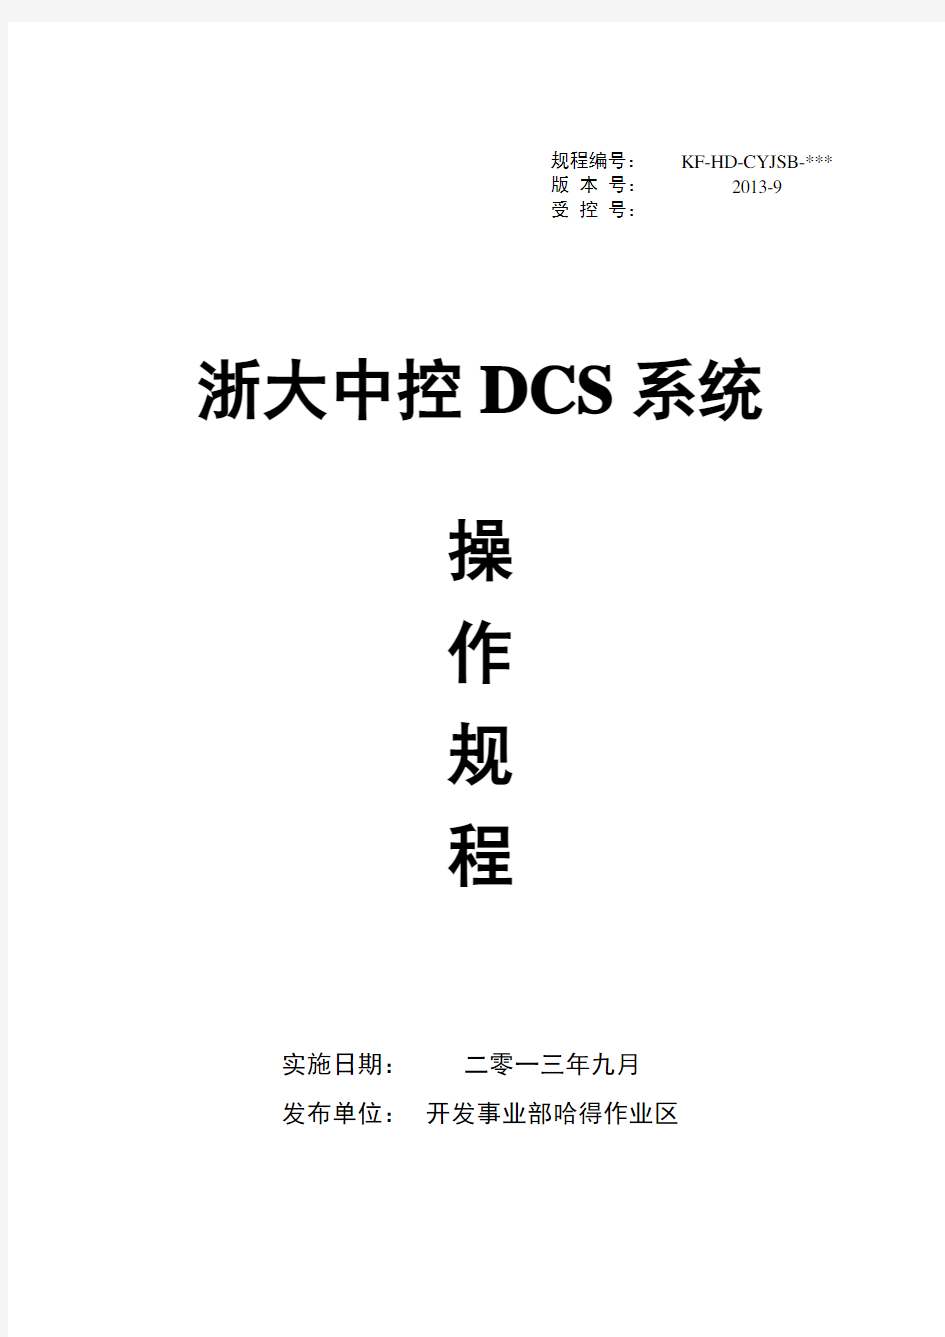 12.浙大中控DCS系统操作规程完整